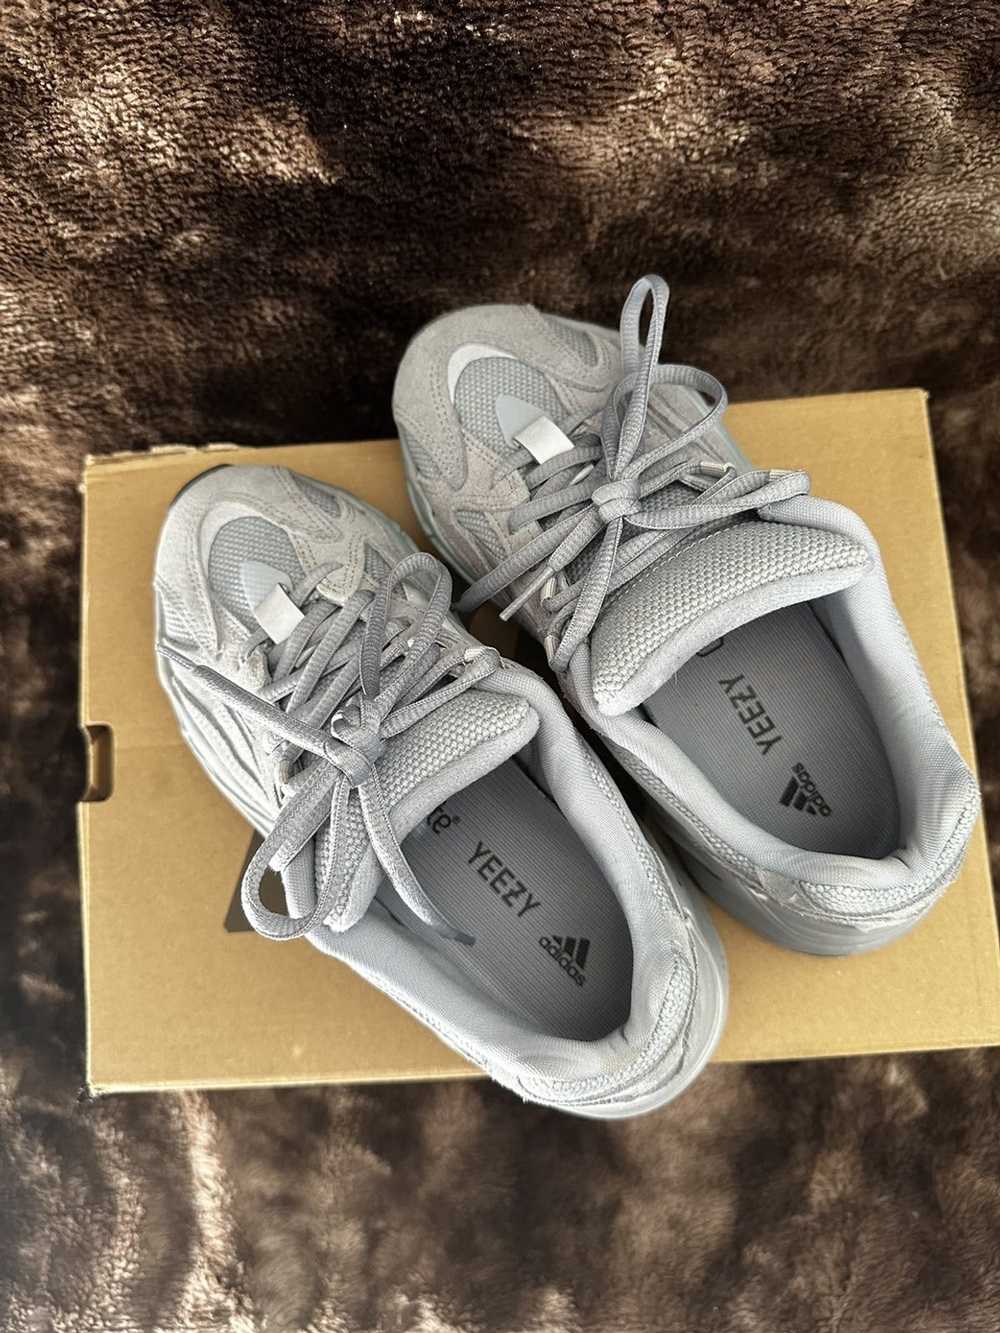 Adidas × Kanye West Yeezy 700v2 size 5 - image 2